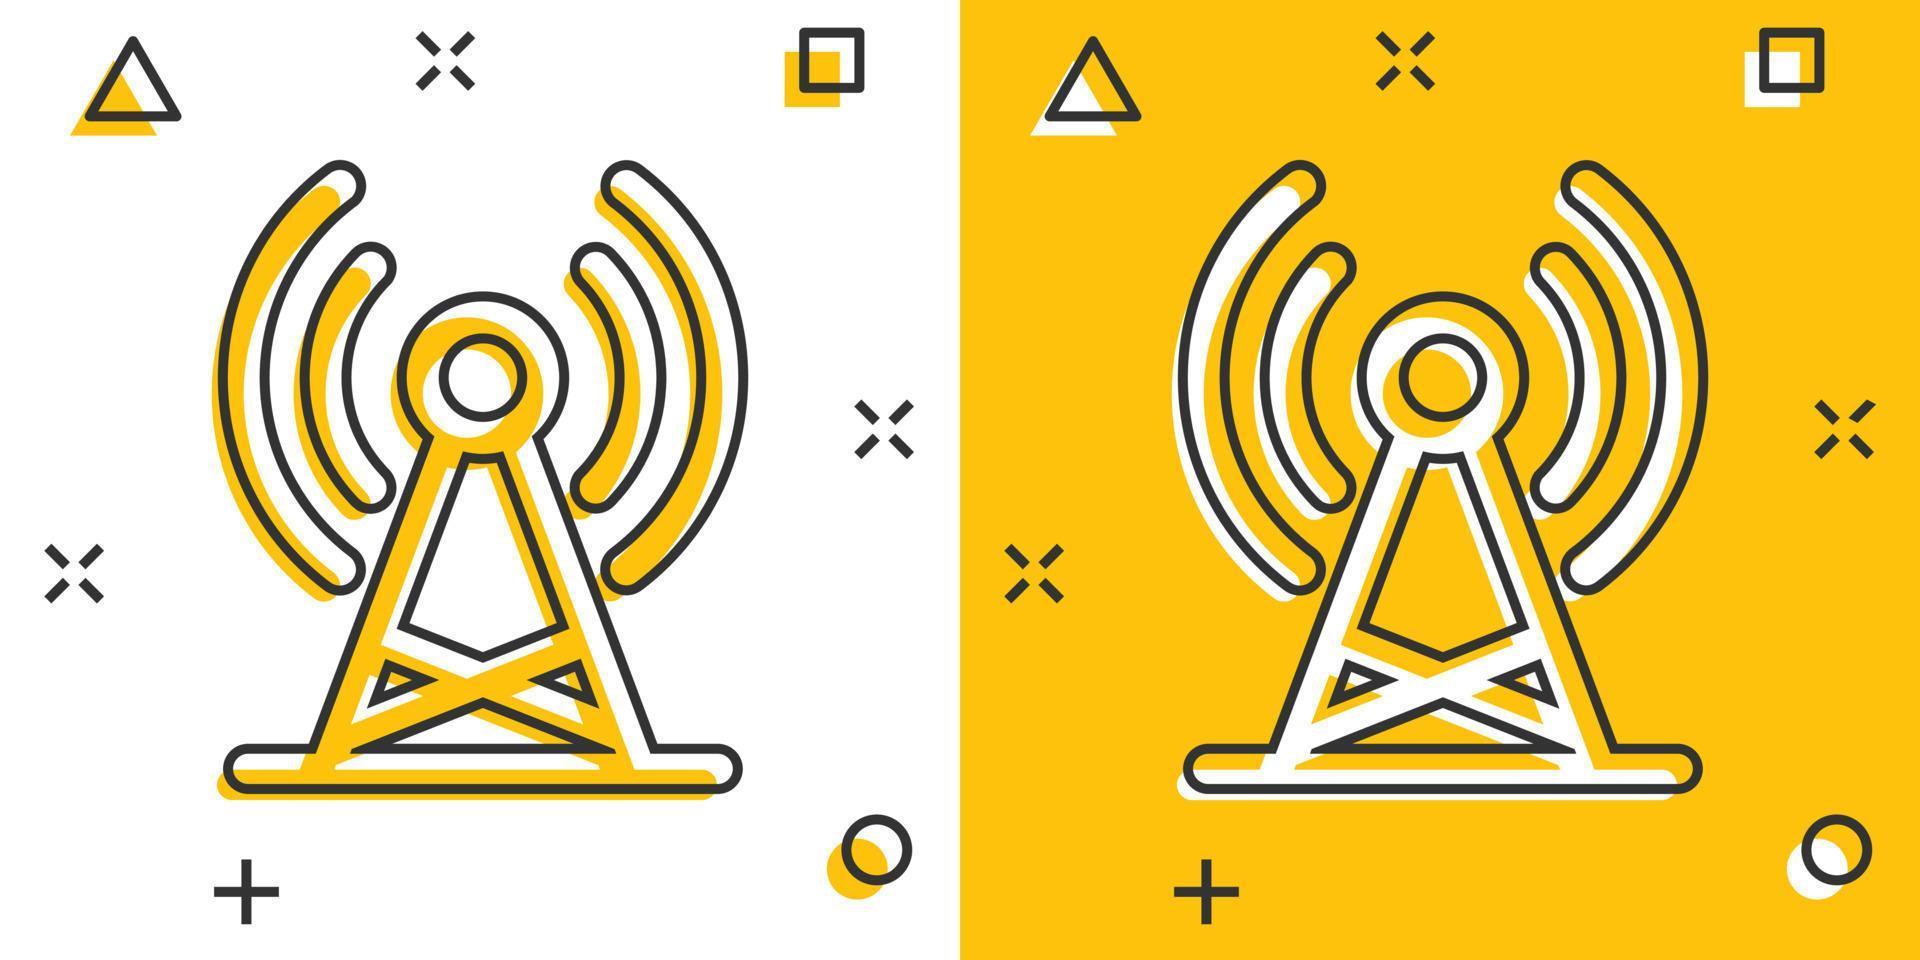 Antennenturm-Symbol im Comic-Stil. Rundfunk Cartoon-Vektor-Illustration auf weißem Hintergrund isoliert. Geschäftskonzept mit Wifi-Splash-Effekt. vektor